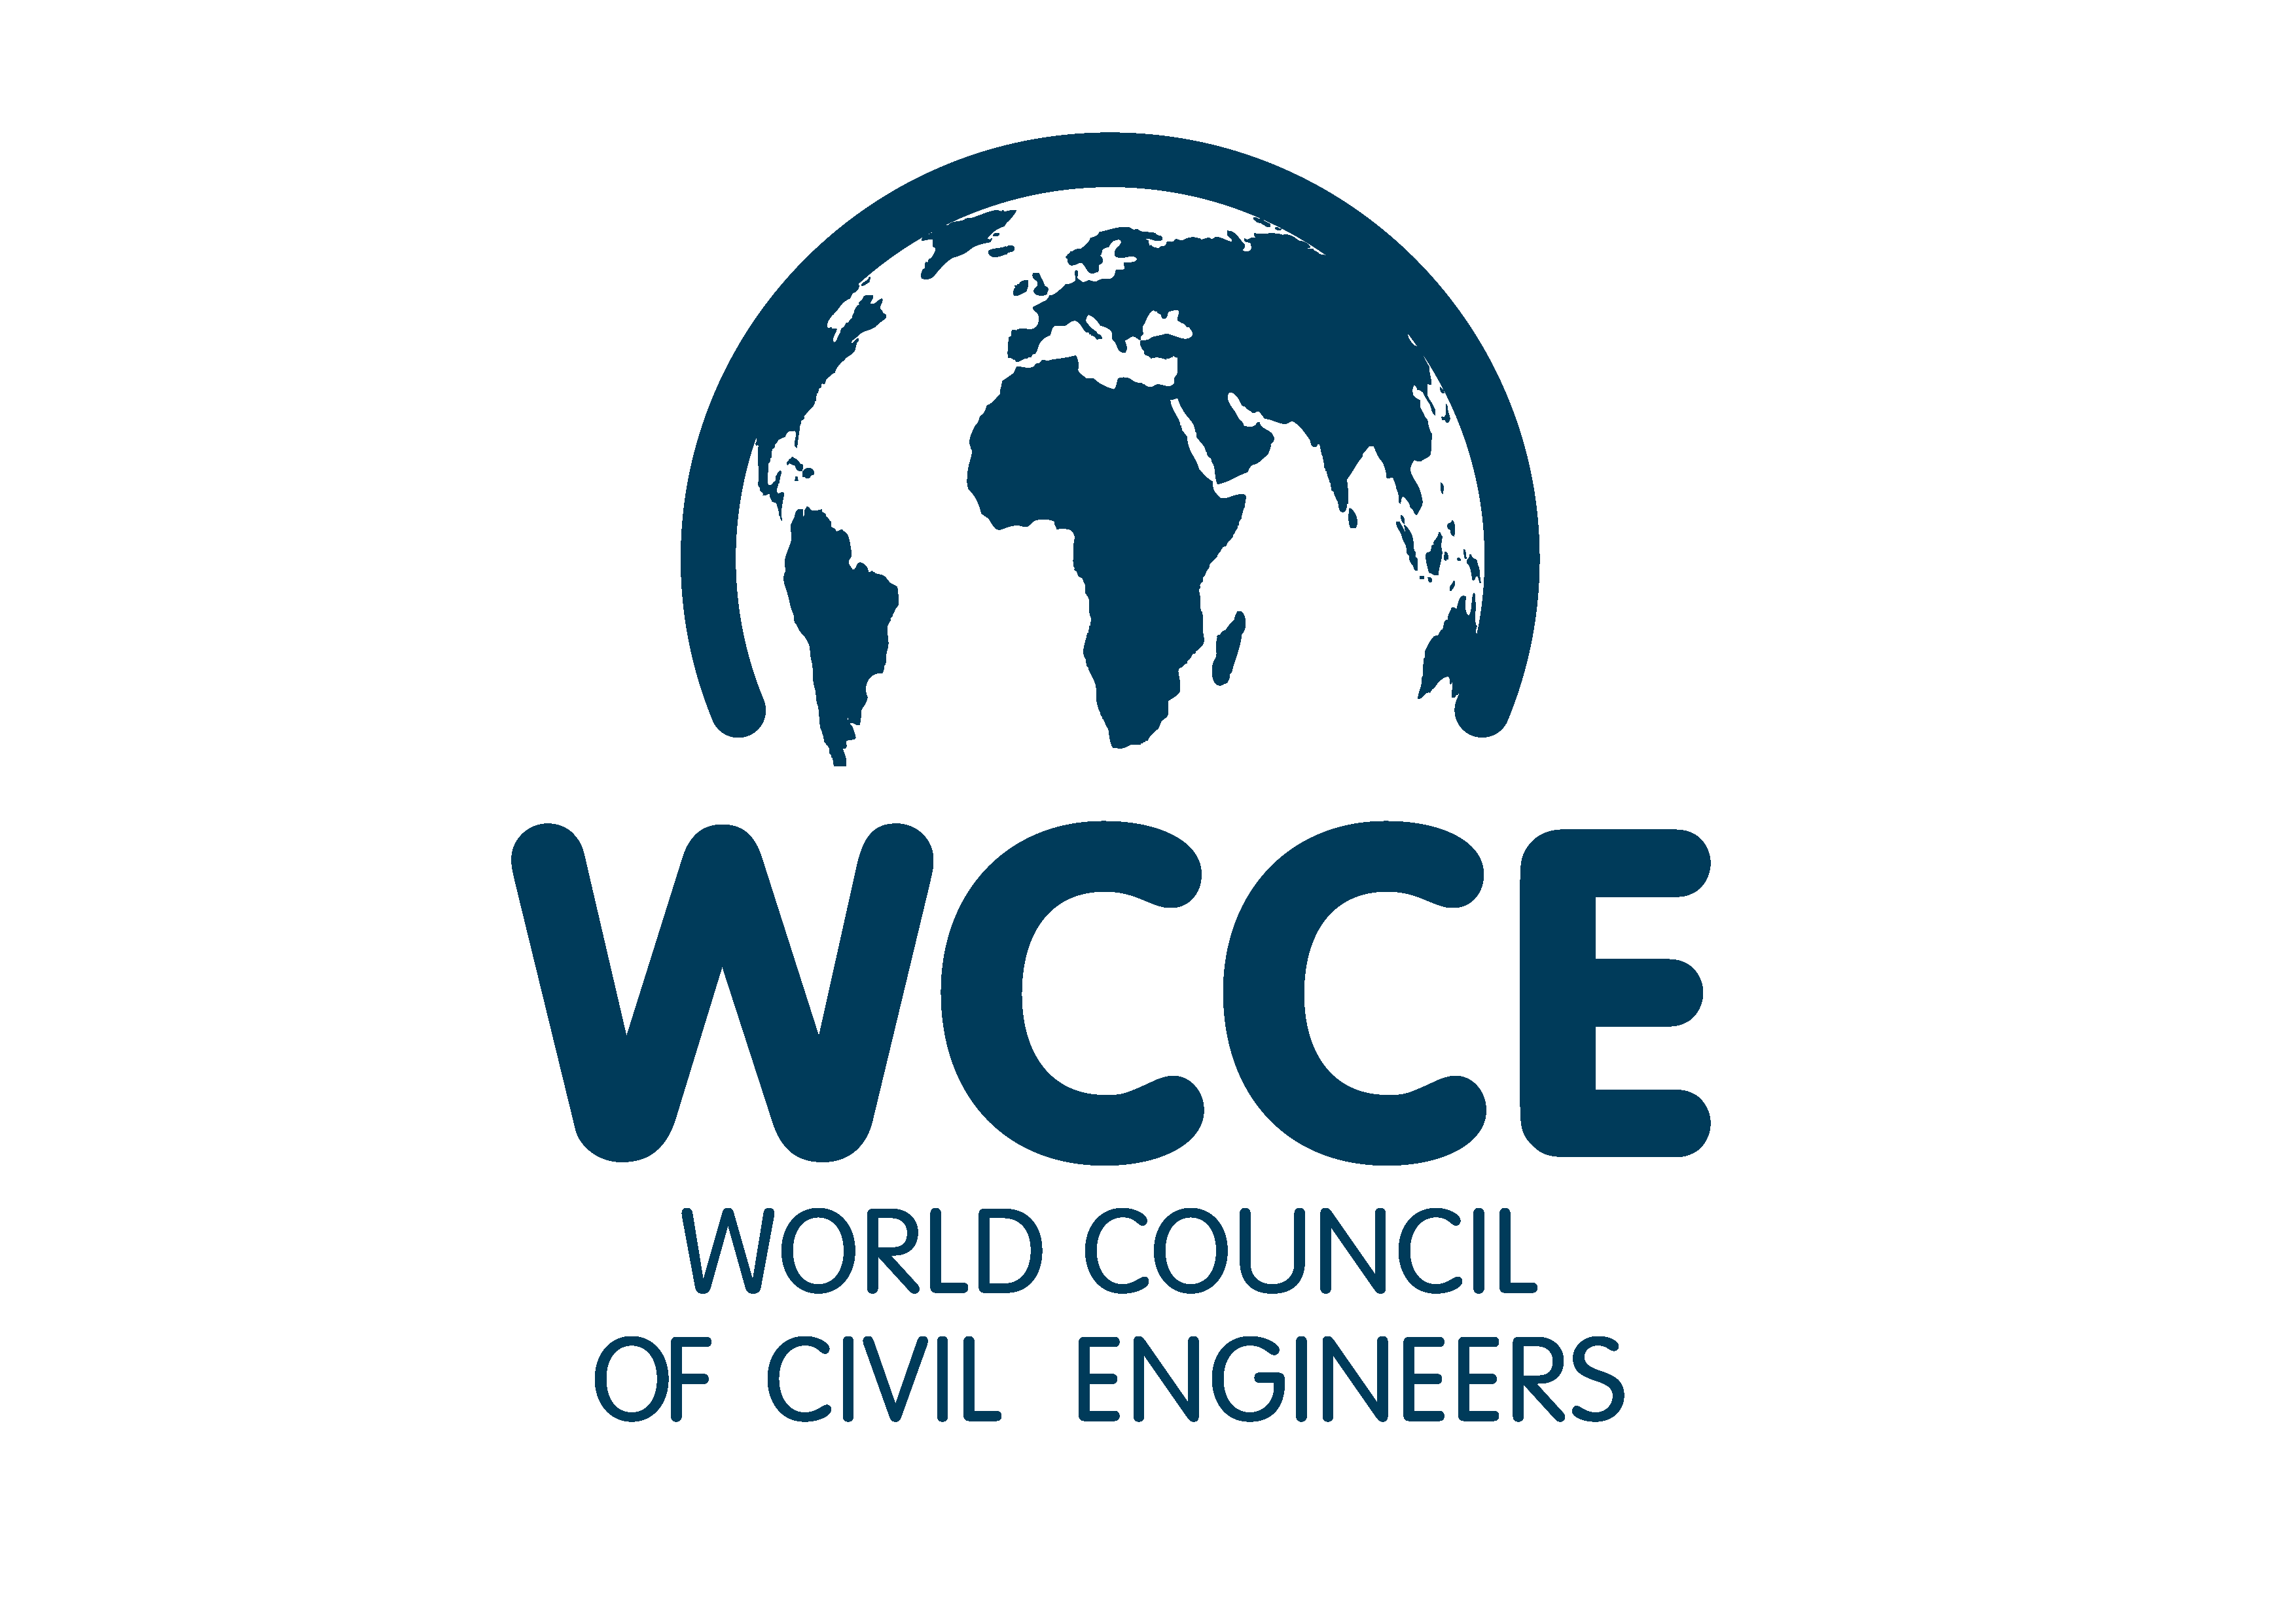 Σημερινές προκλήσεις του Πολιτικού Μηχανικού, σύμφωνα με μελέτη του WCCE (World Council of Civil Engineers)